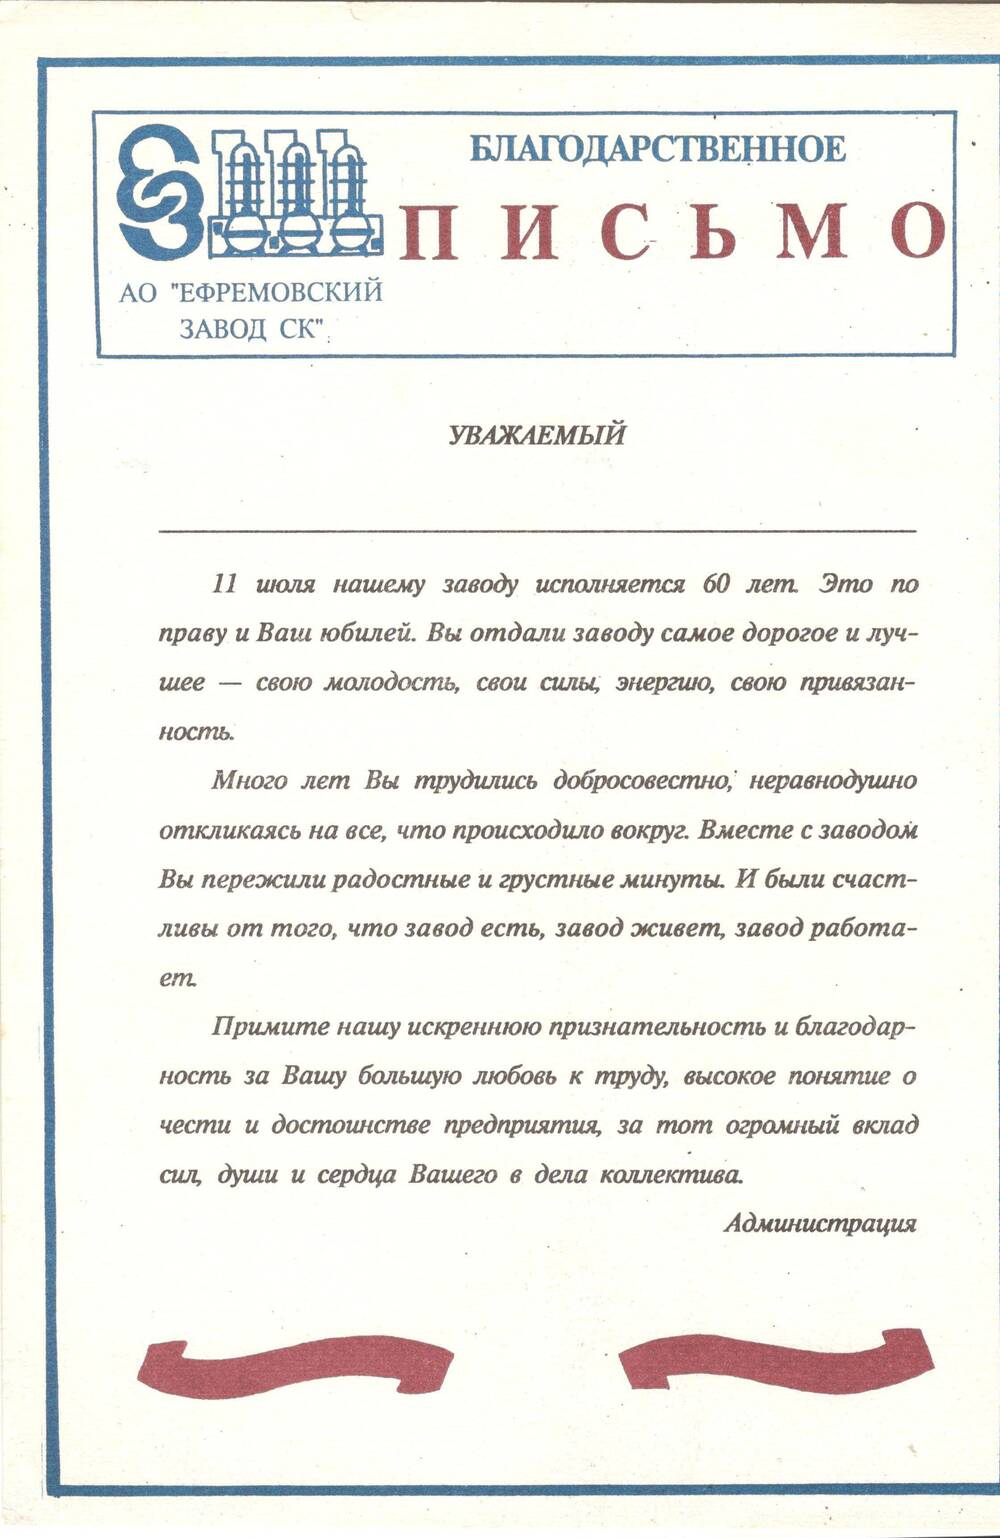 Благодарственное письмо от А0 « Ефремовский завод СК» в честь 60-летия завода.